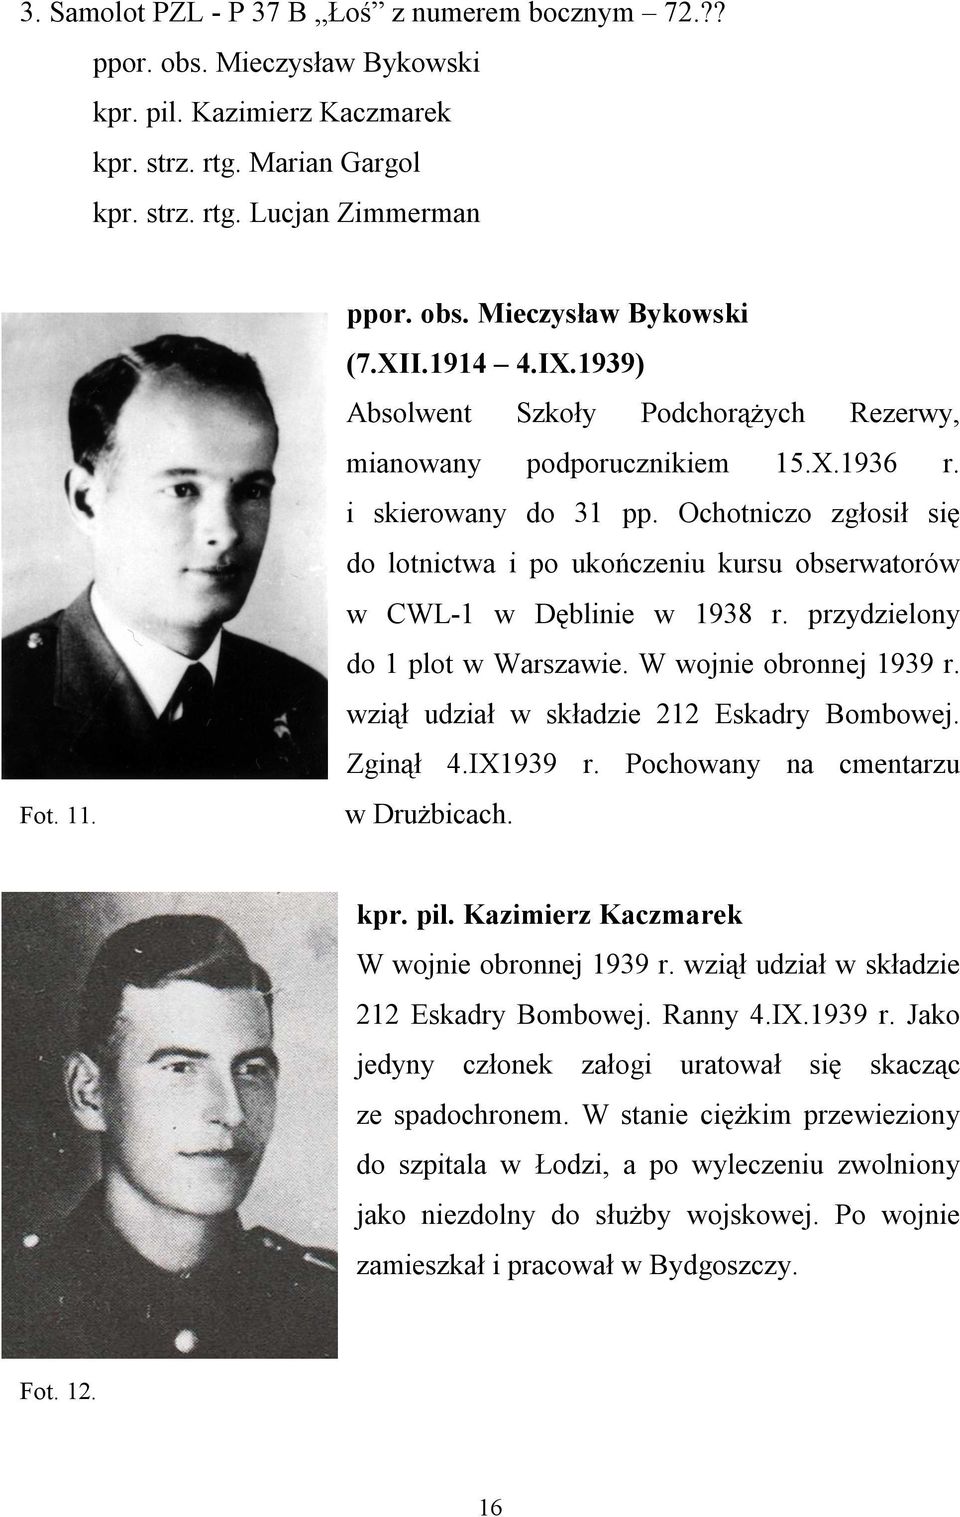 Ochotniczo zgłosił się do lotnictwa i po ukończeniu kursu obserwatorów w CWL-1 w Dęblinie w 1938 r. przydzielony do 1 plot w Warszawie. W wojnie obronnej 1939 r.